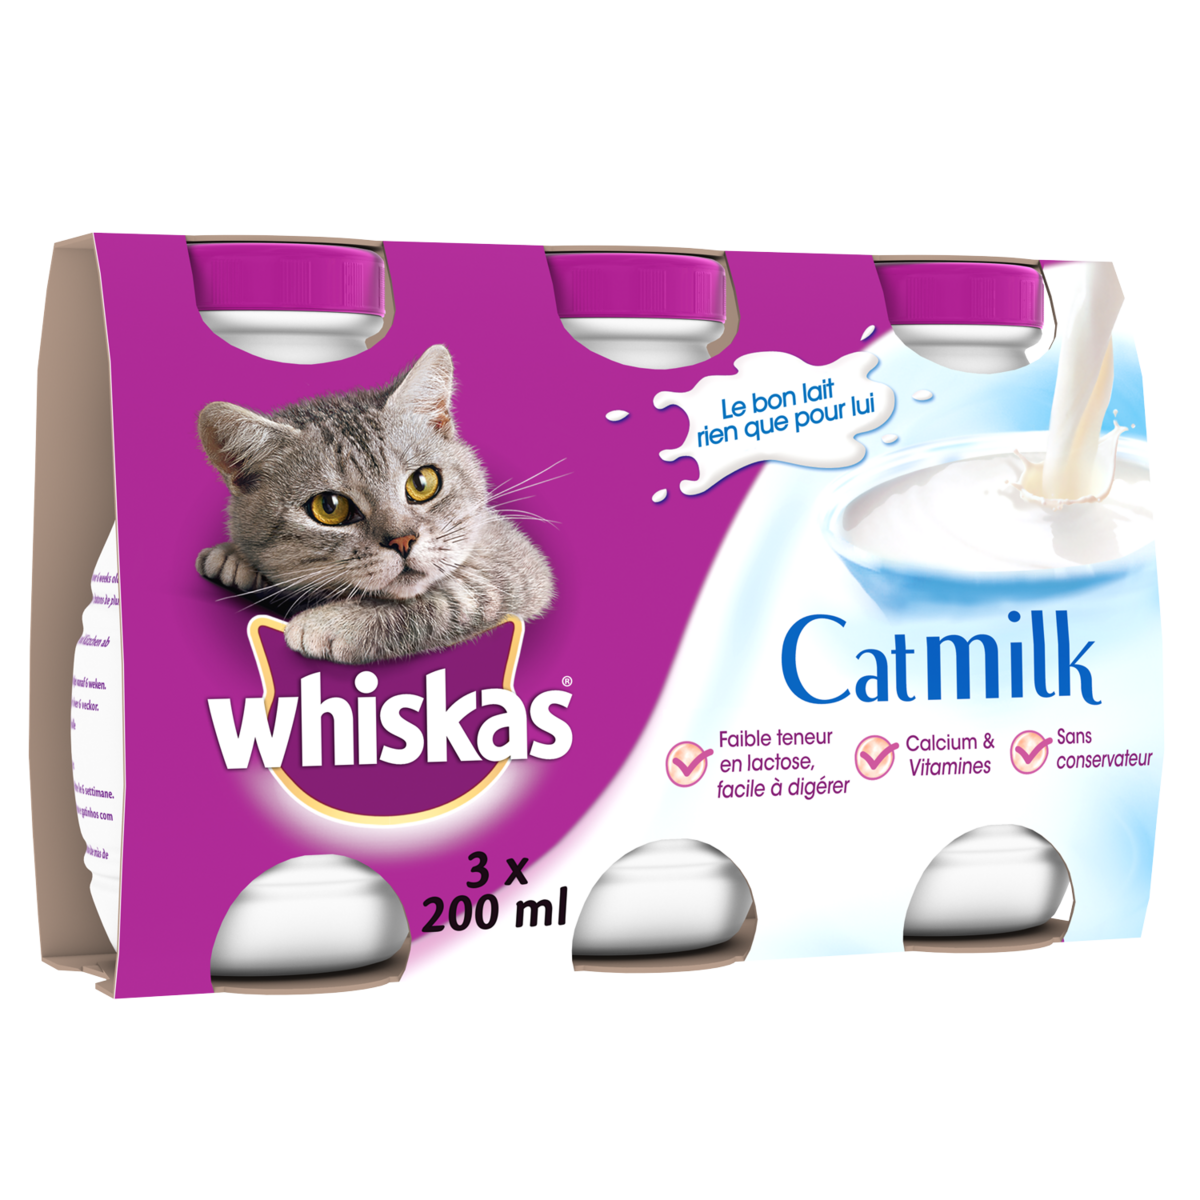 WHISKAS Cat milk bouteilles lait pour chat 3x200ml